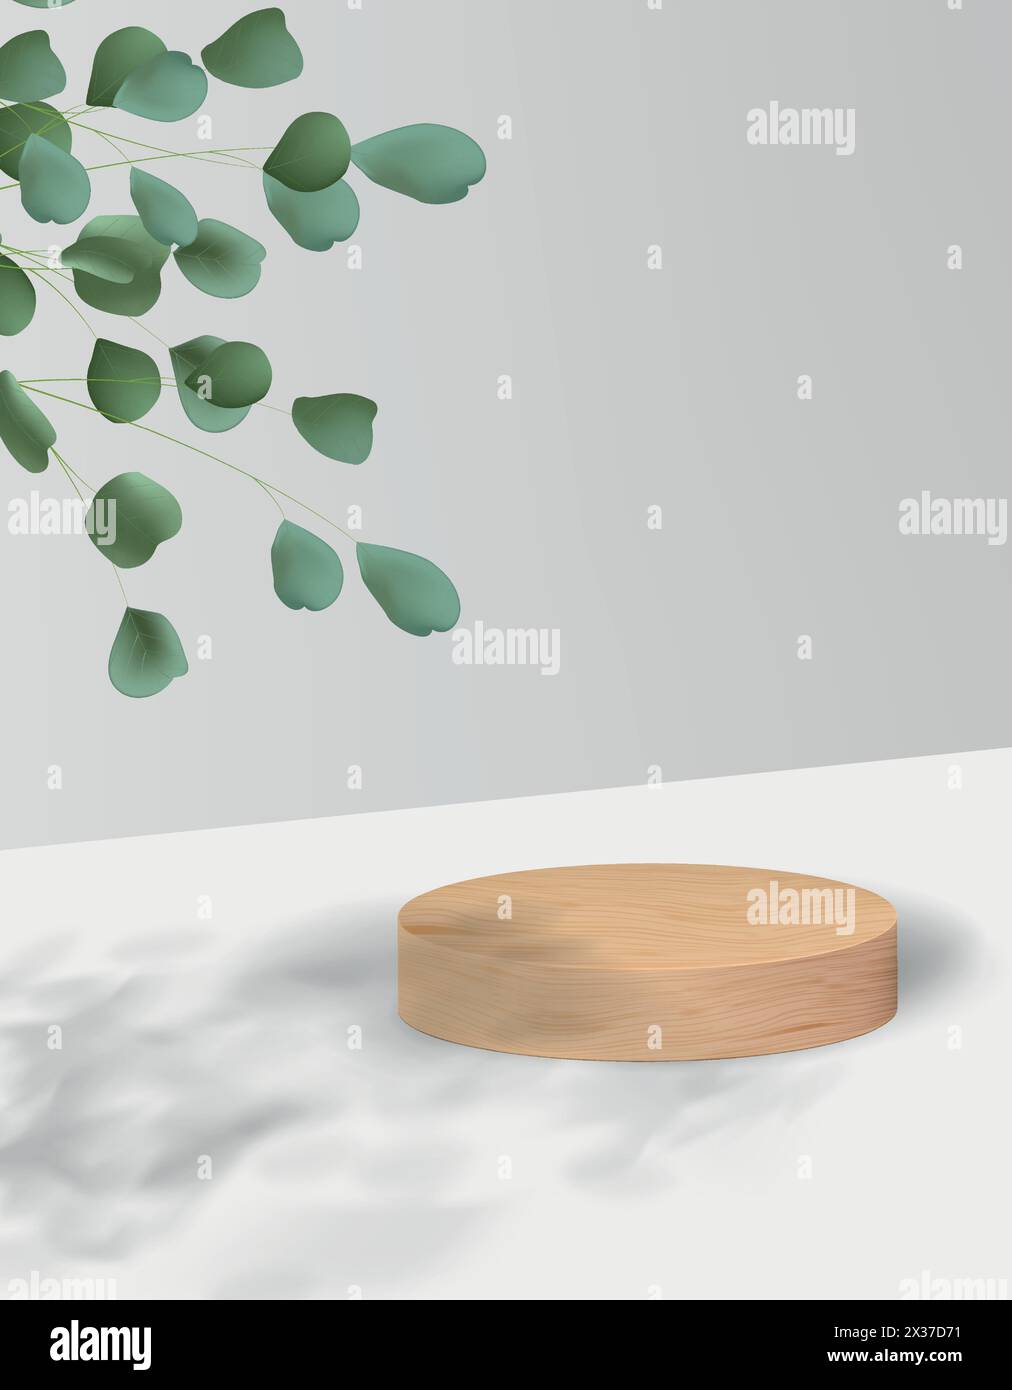 Fond abstrait dans un style minimaliste avec plate-forme en bois. Podium réaliste vide pour la démonstration du produit avec plante sur fond. Illustration de Vecteur